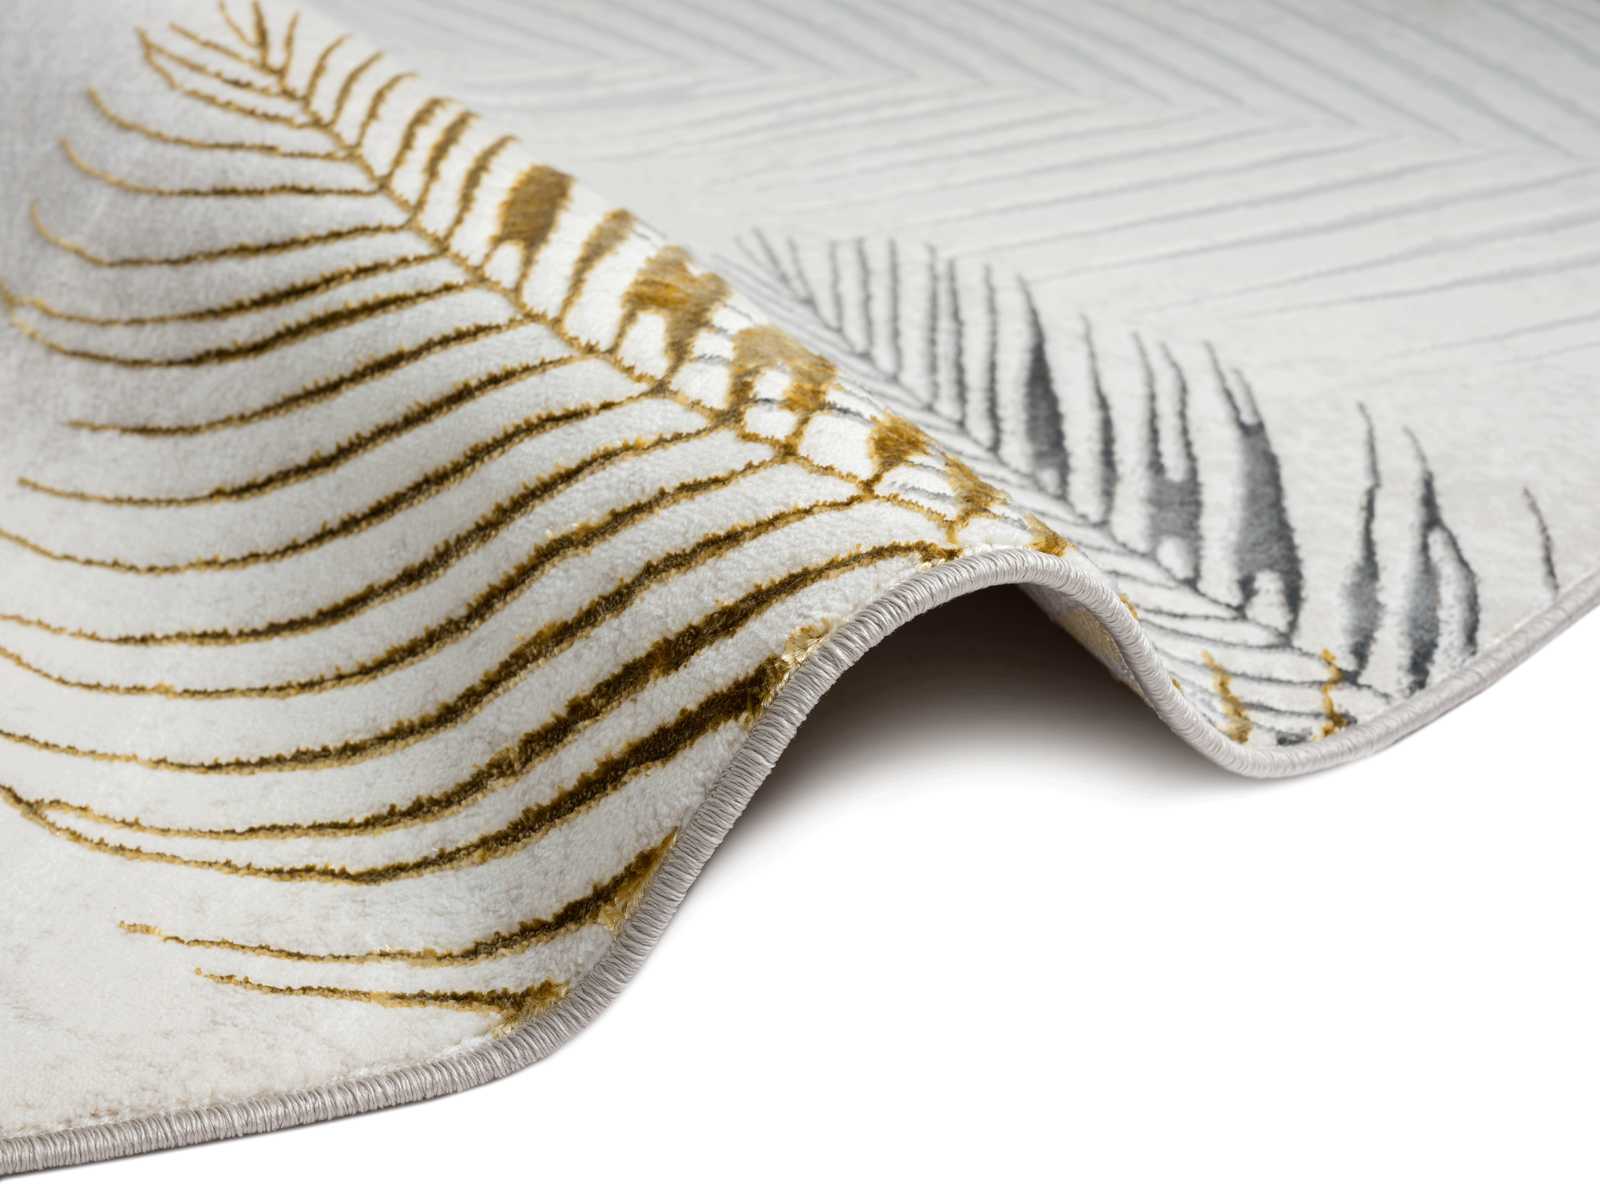             alfombra de pelo alto crema suave - 150 x 80 cm
        